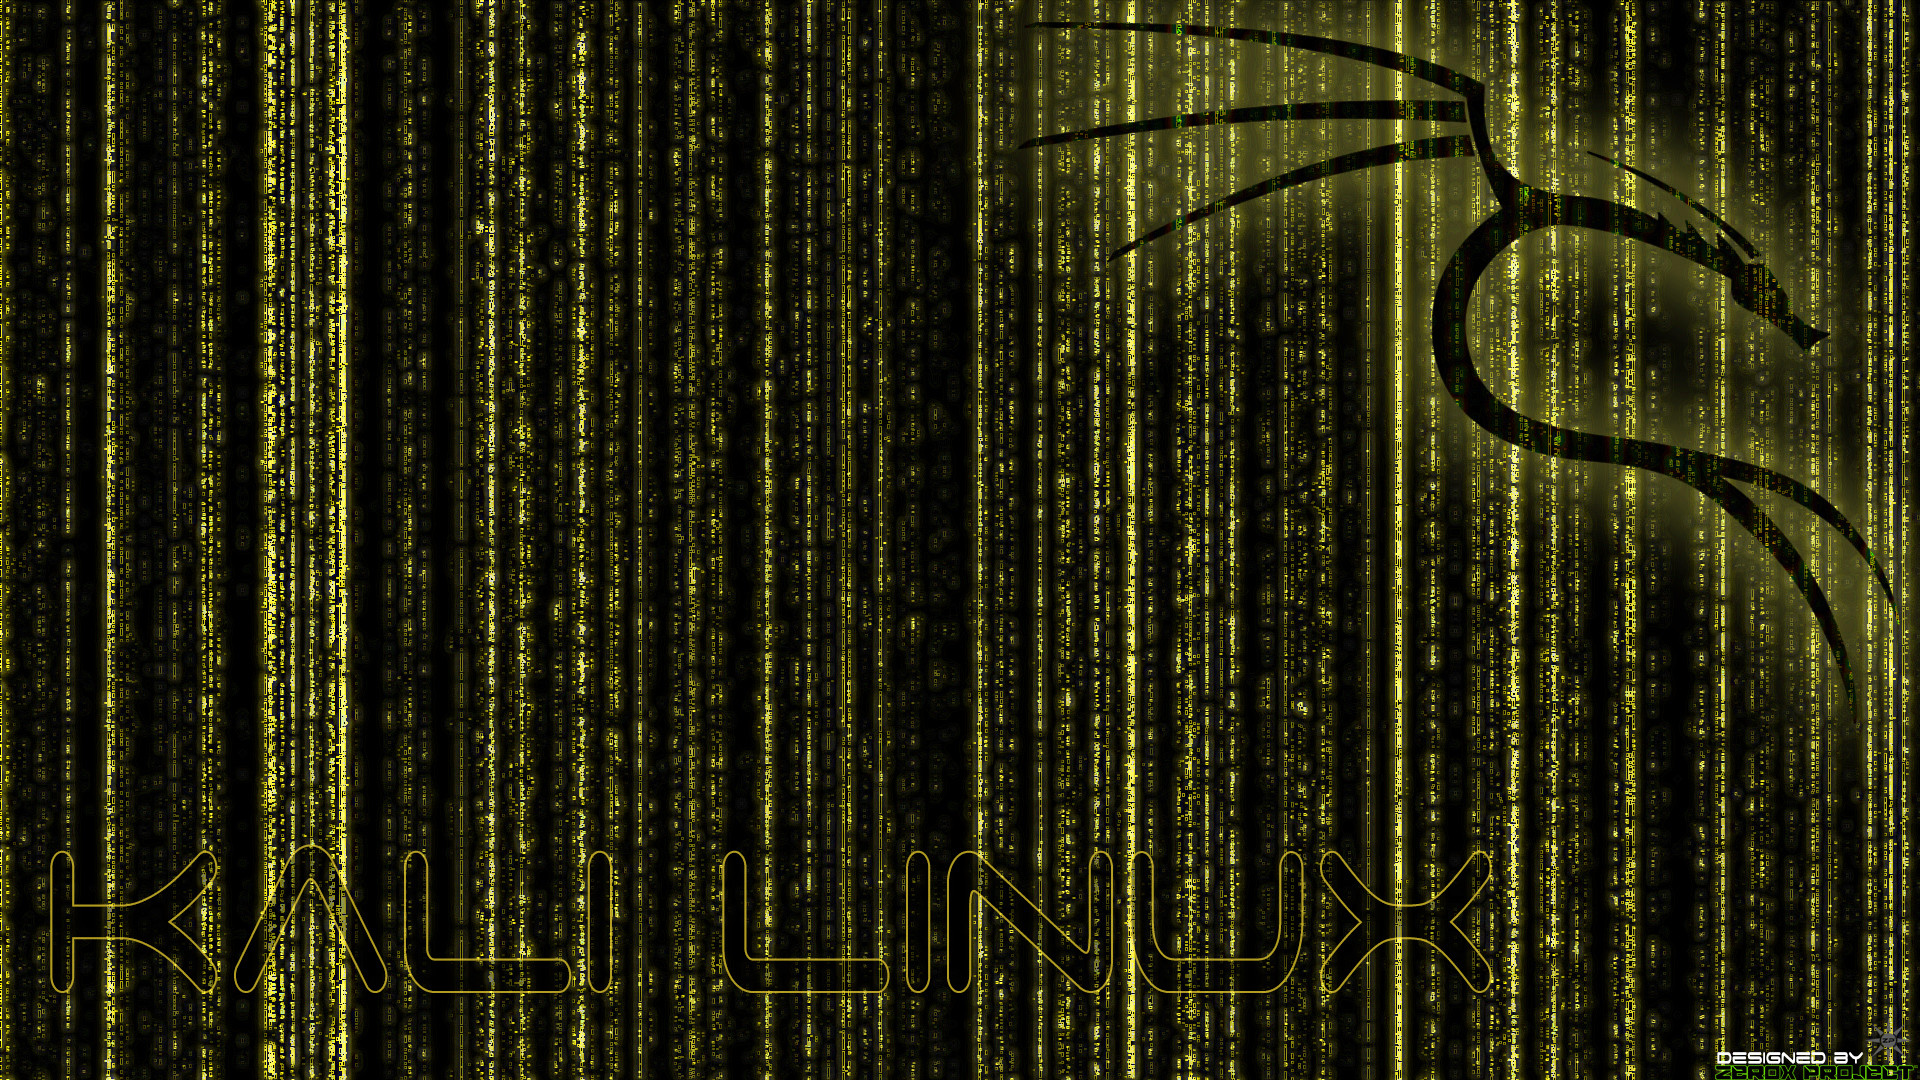 Với hình nền Kali Linux BackTrack màu vàng tuyệt đẹp, bạn sẽ cảm nhận được sự mạnh mẽ và chuyên nghiệp của hệ điều hành Kali Linux. Hãy tải về và trang trí cho màn hình máy tính của bạn ngay hôm nay để cảm nhận sự khác biệt và nổi bật hơn.